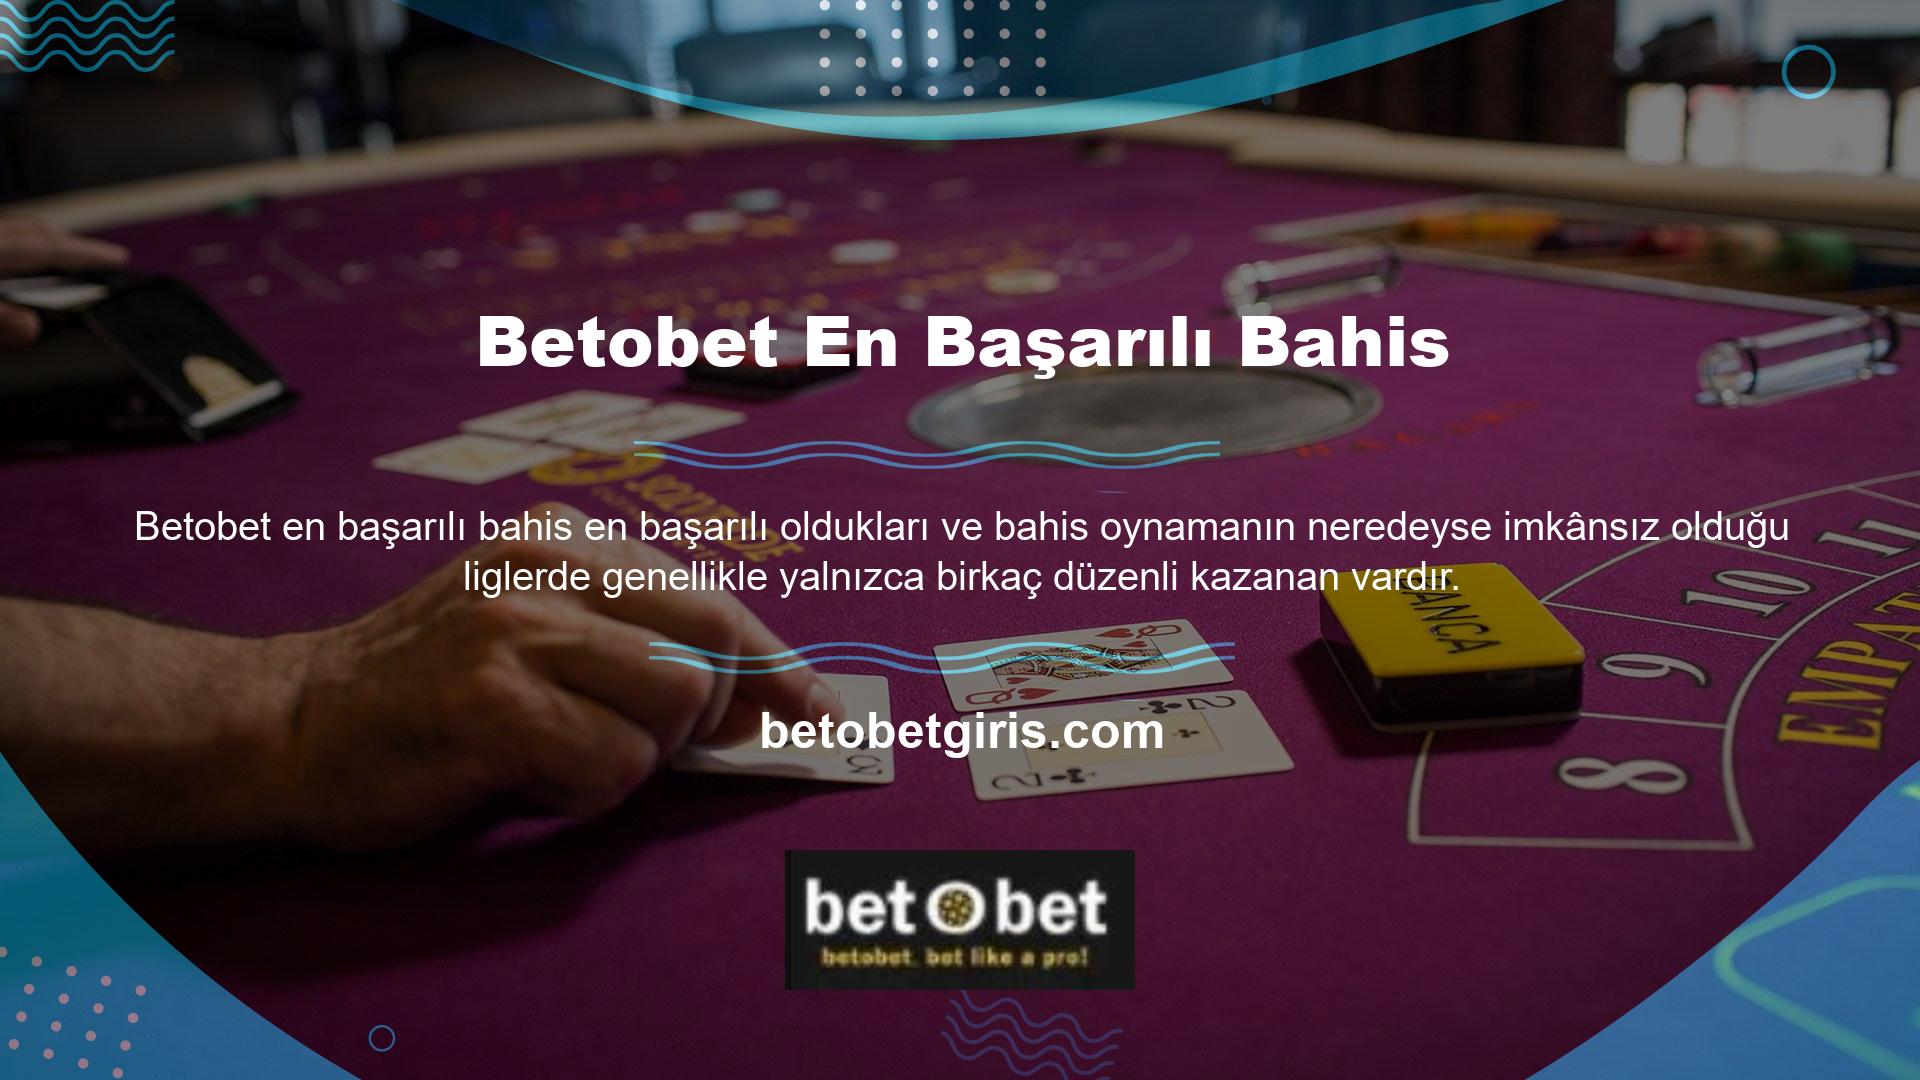 Betobet Yeni Adresi web sitesinde özellikle Betobet oyunları, casinolar, promosyonlar ve finansal işlemlerle ilgili müşteri sorularını yanıtlamak için 7/24 hizmet veren bir yardım hattı bulunmaktadır